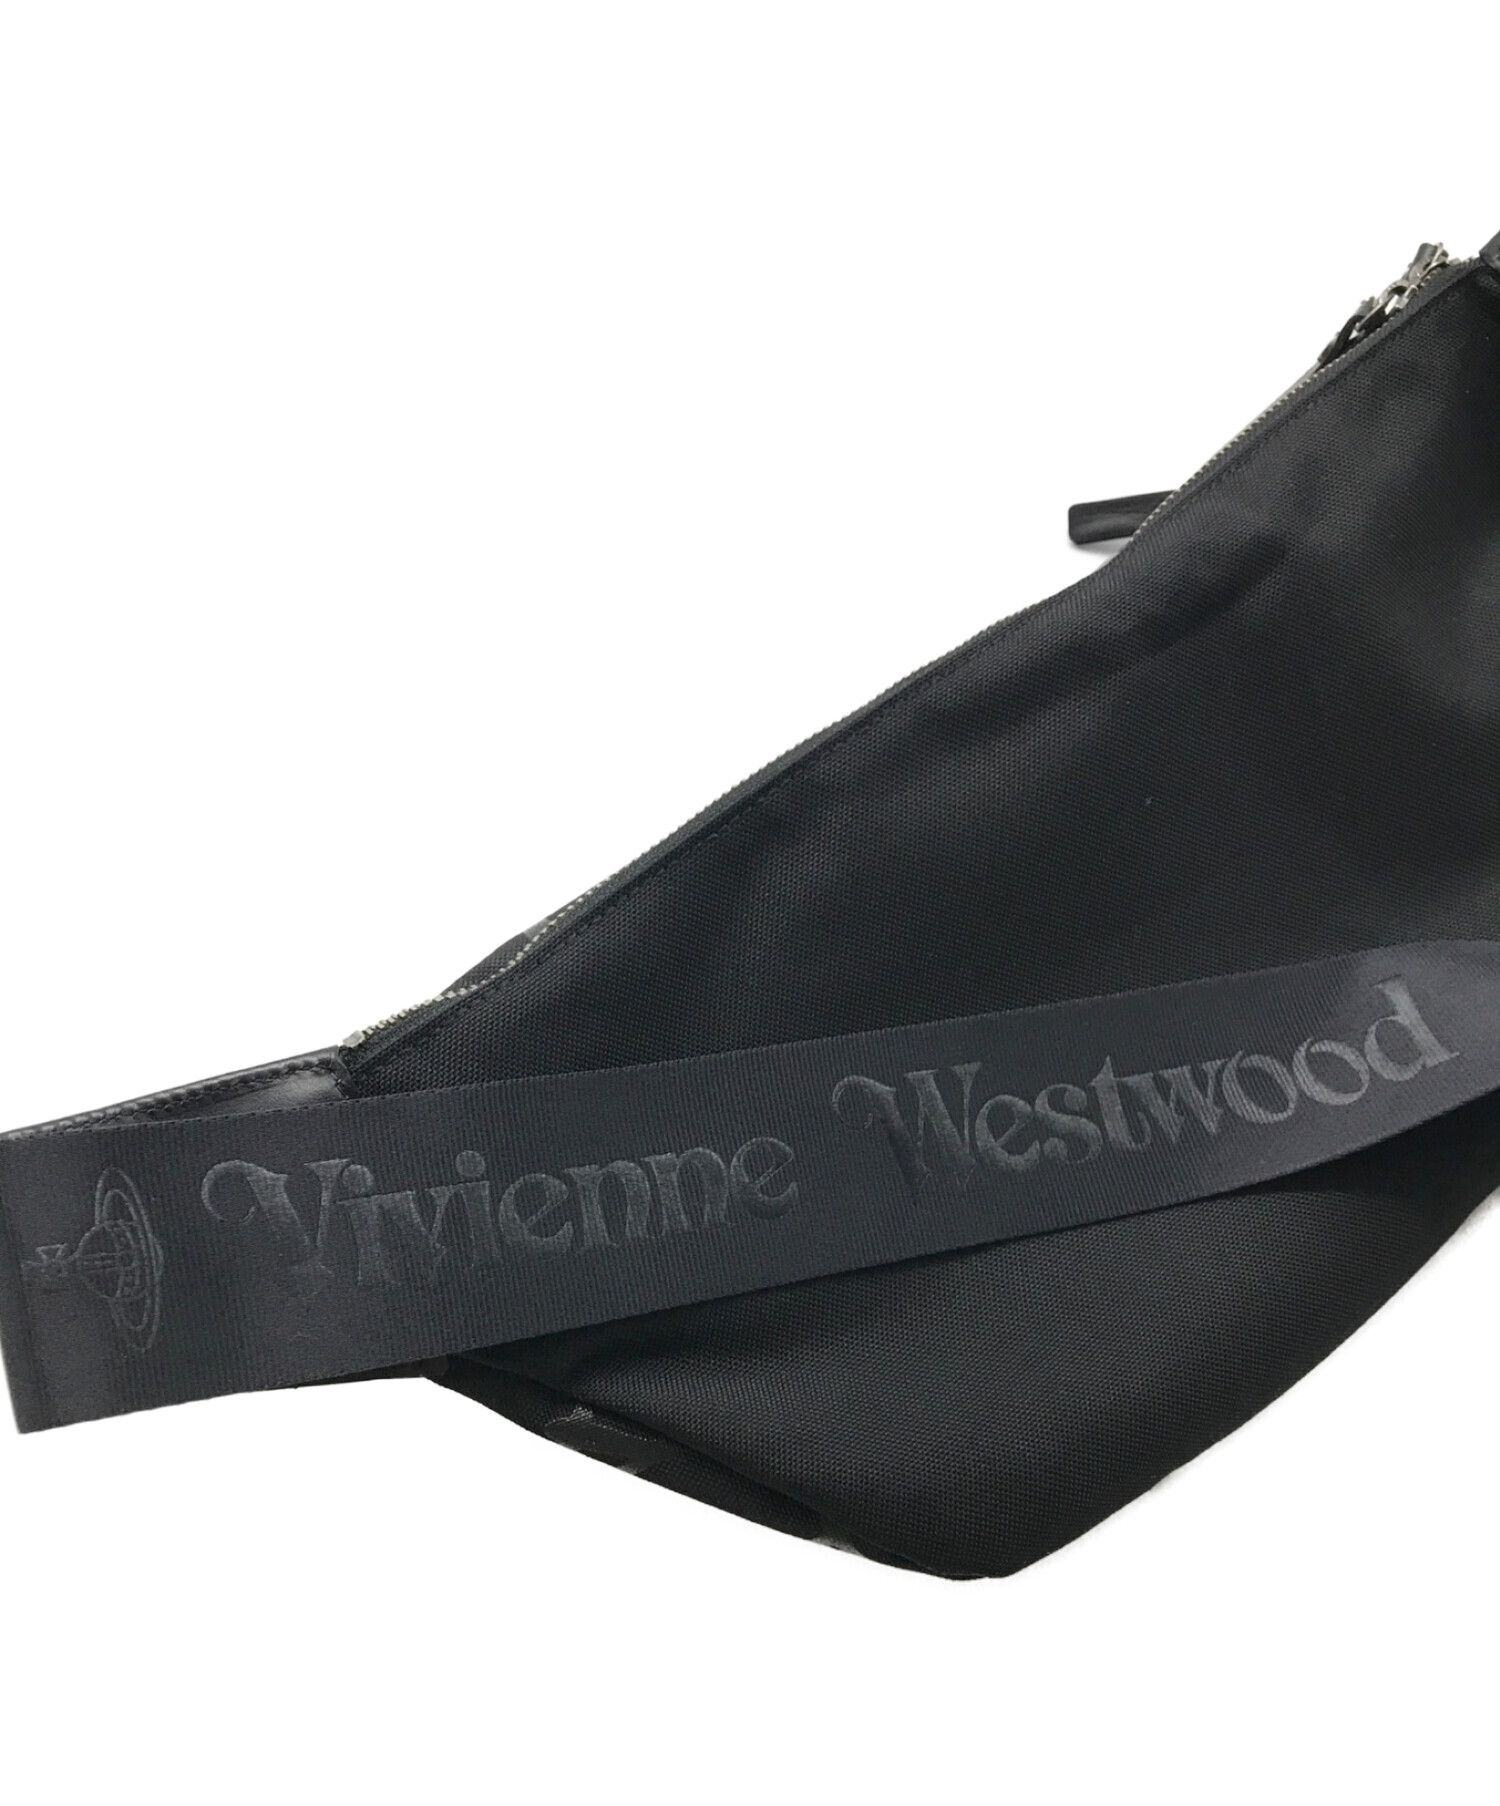 Vivienne Westwood (ヴィヴィアンウエストウッド) ウエストバッグ / ボディーバッグ ブラック